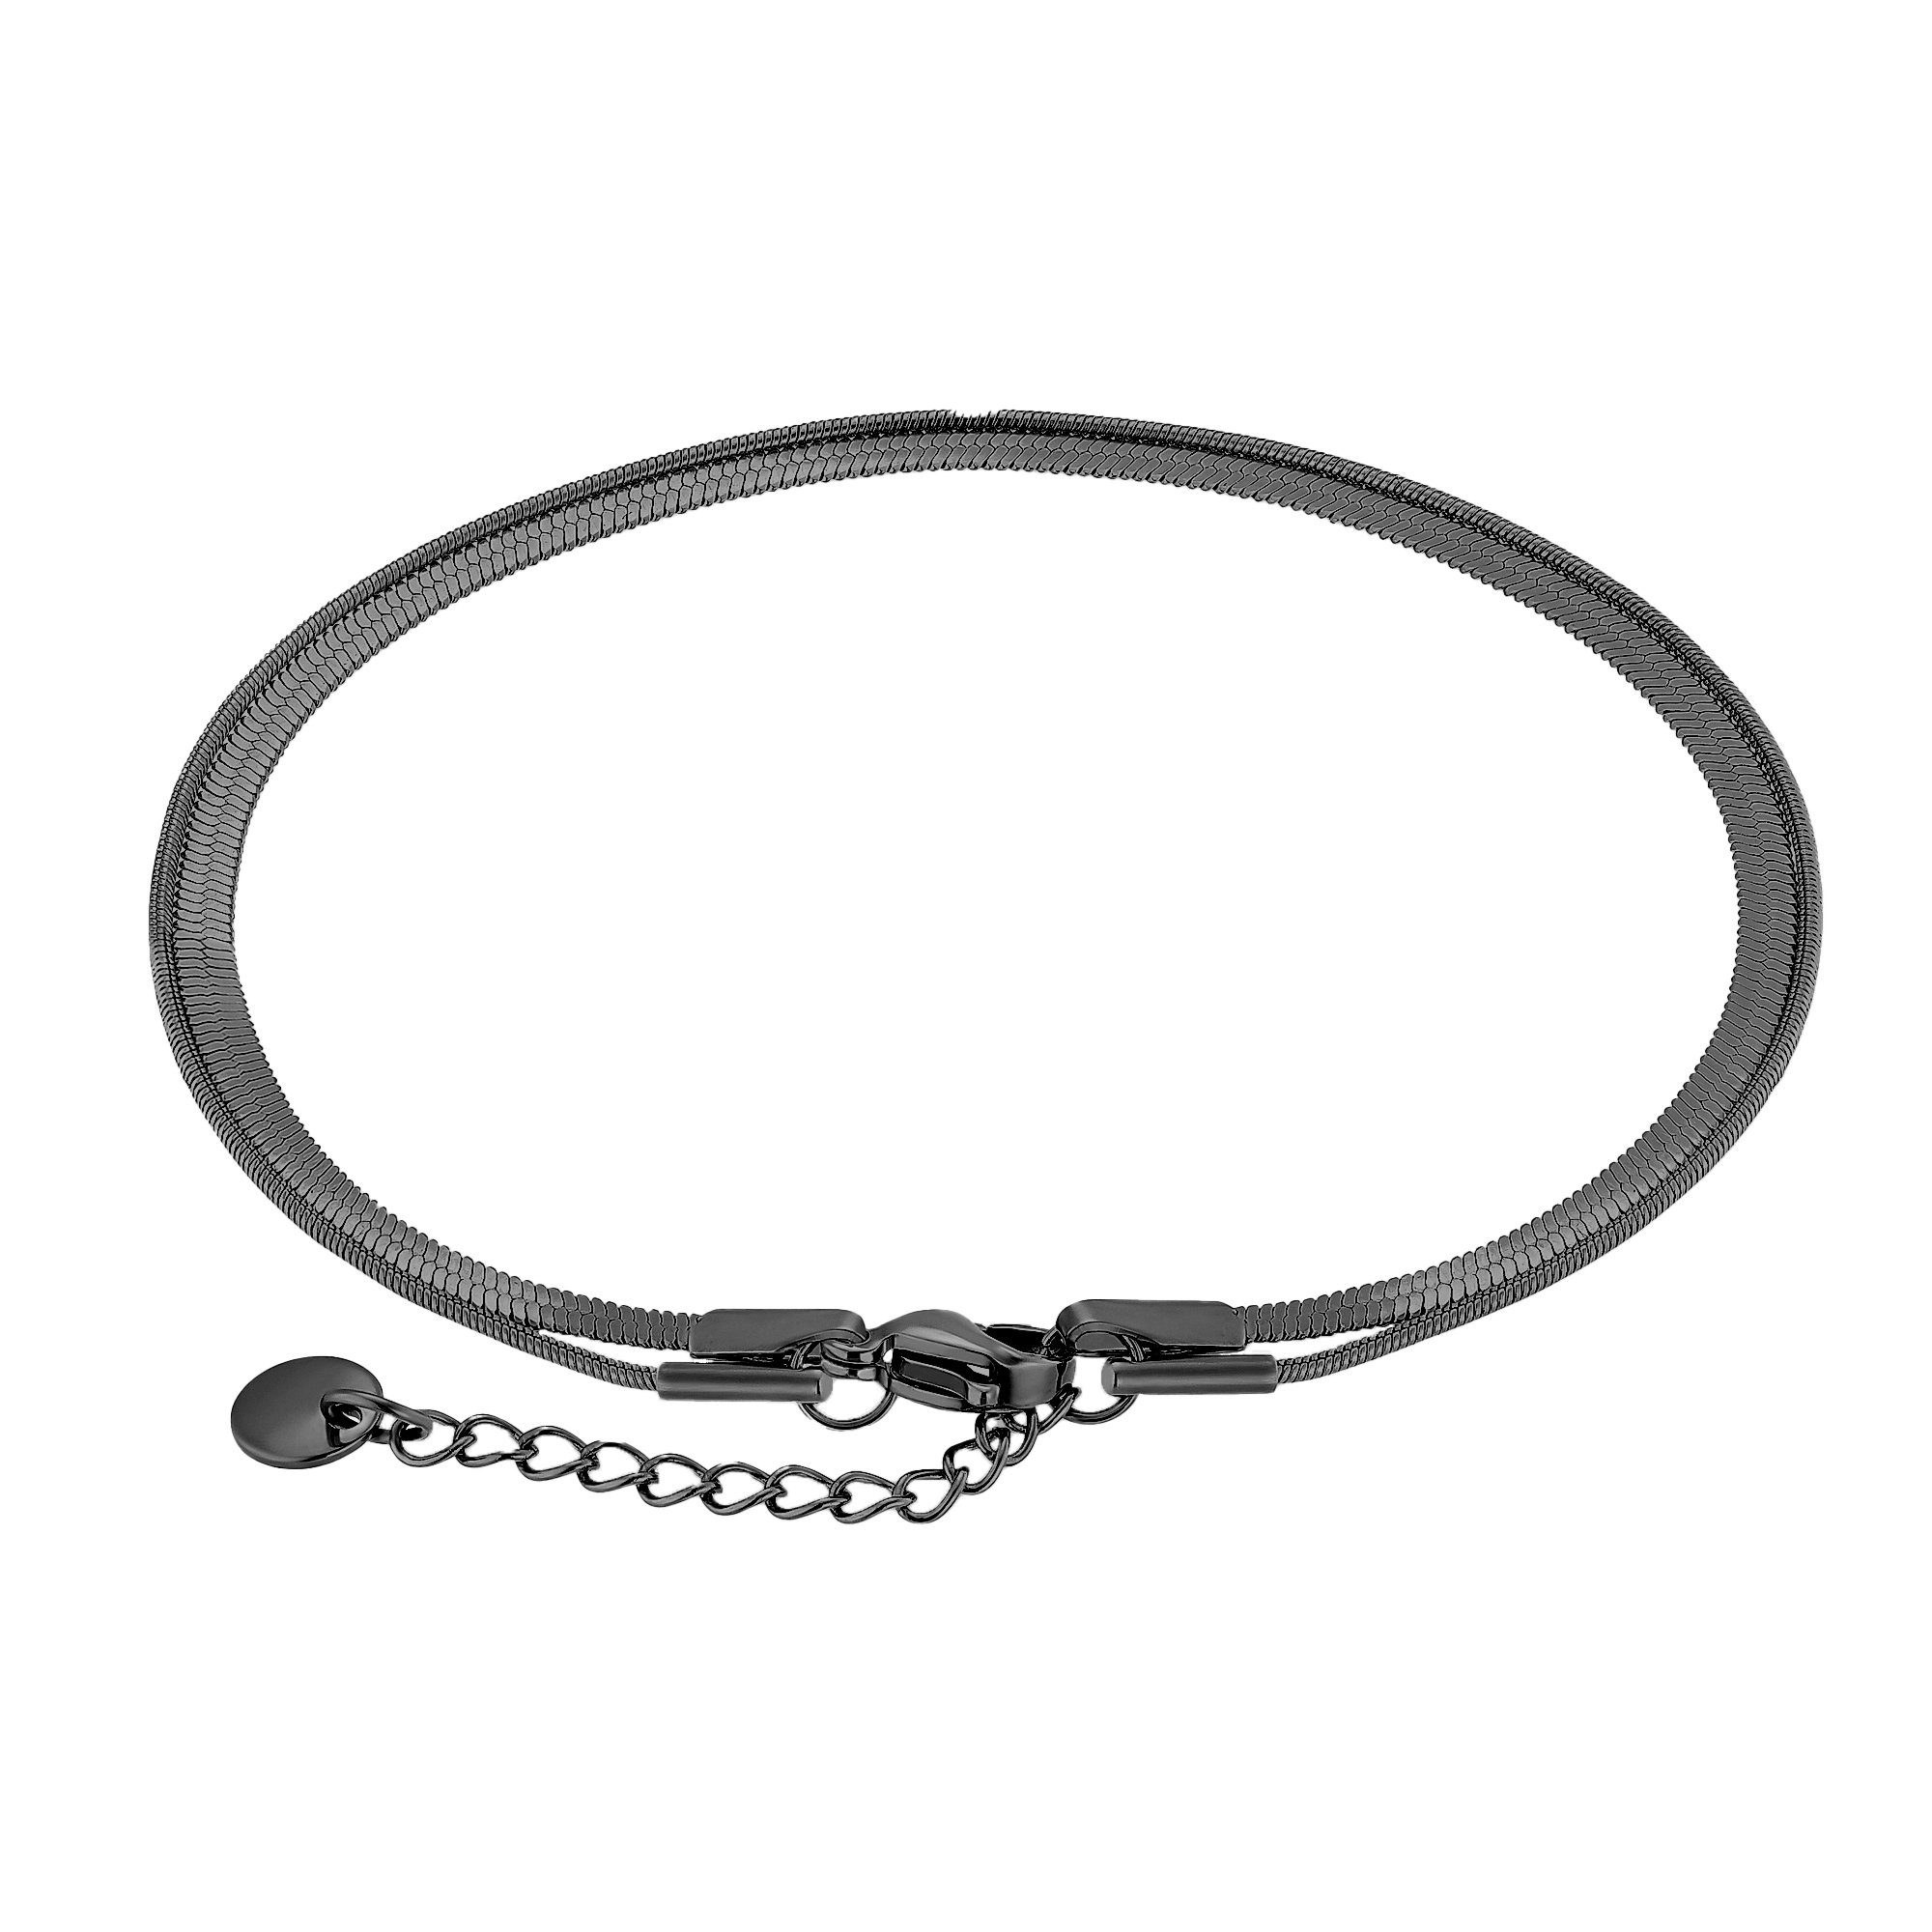 Männer Armkette für Thiago farben schwarz (Armband, inkl. Geschenkverpackung), Armband Heideman